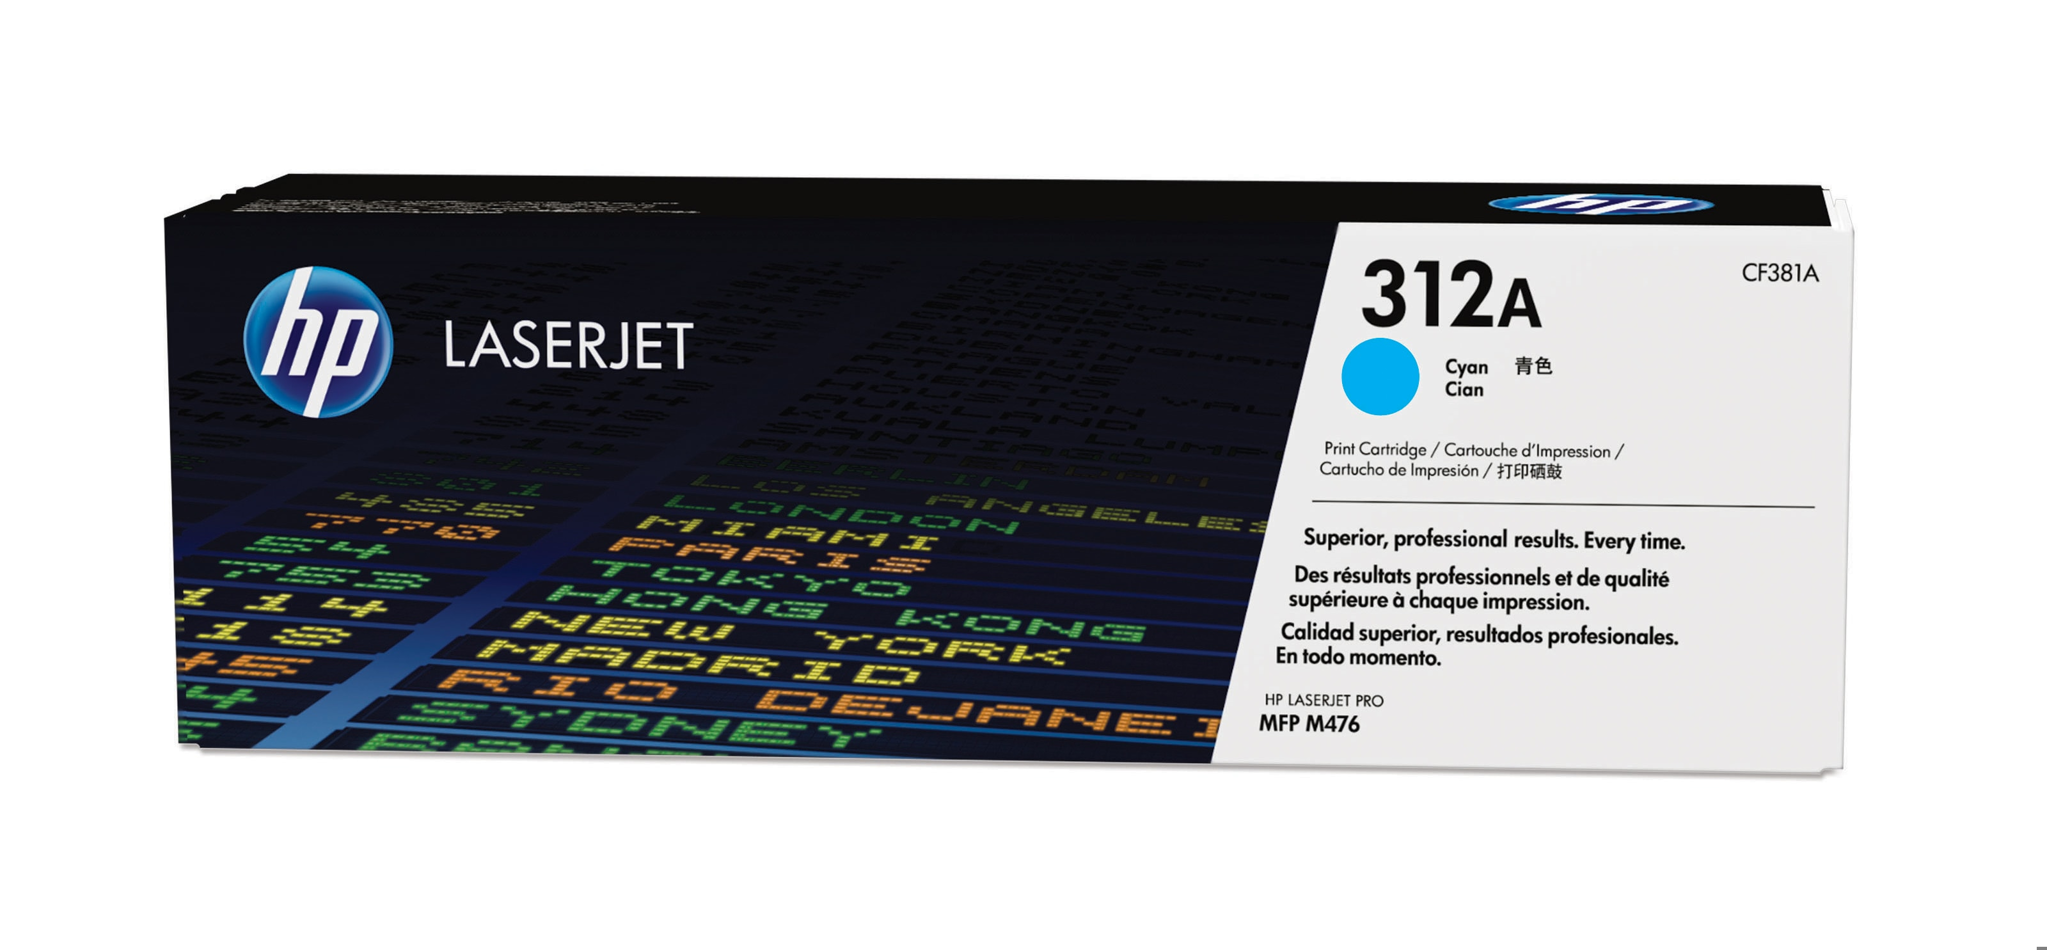 Bild von HP 312A Cyan LaserJet Tonerkartusche - 2700 Seiten - Cyan - 1 Stück(e)